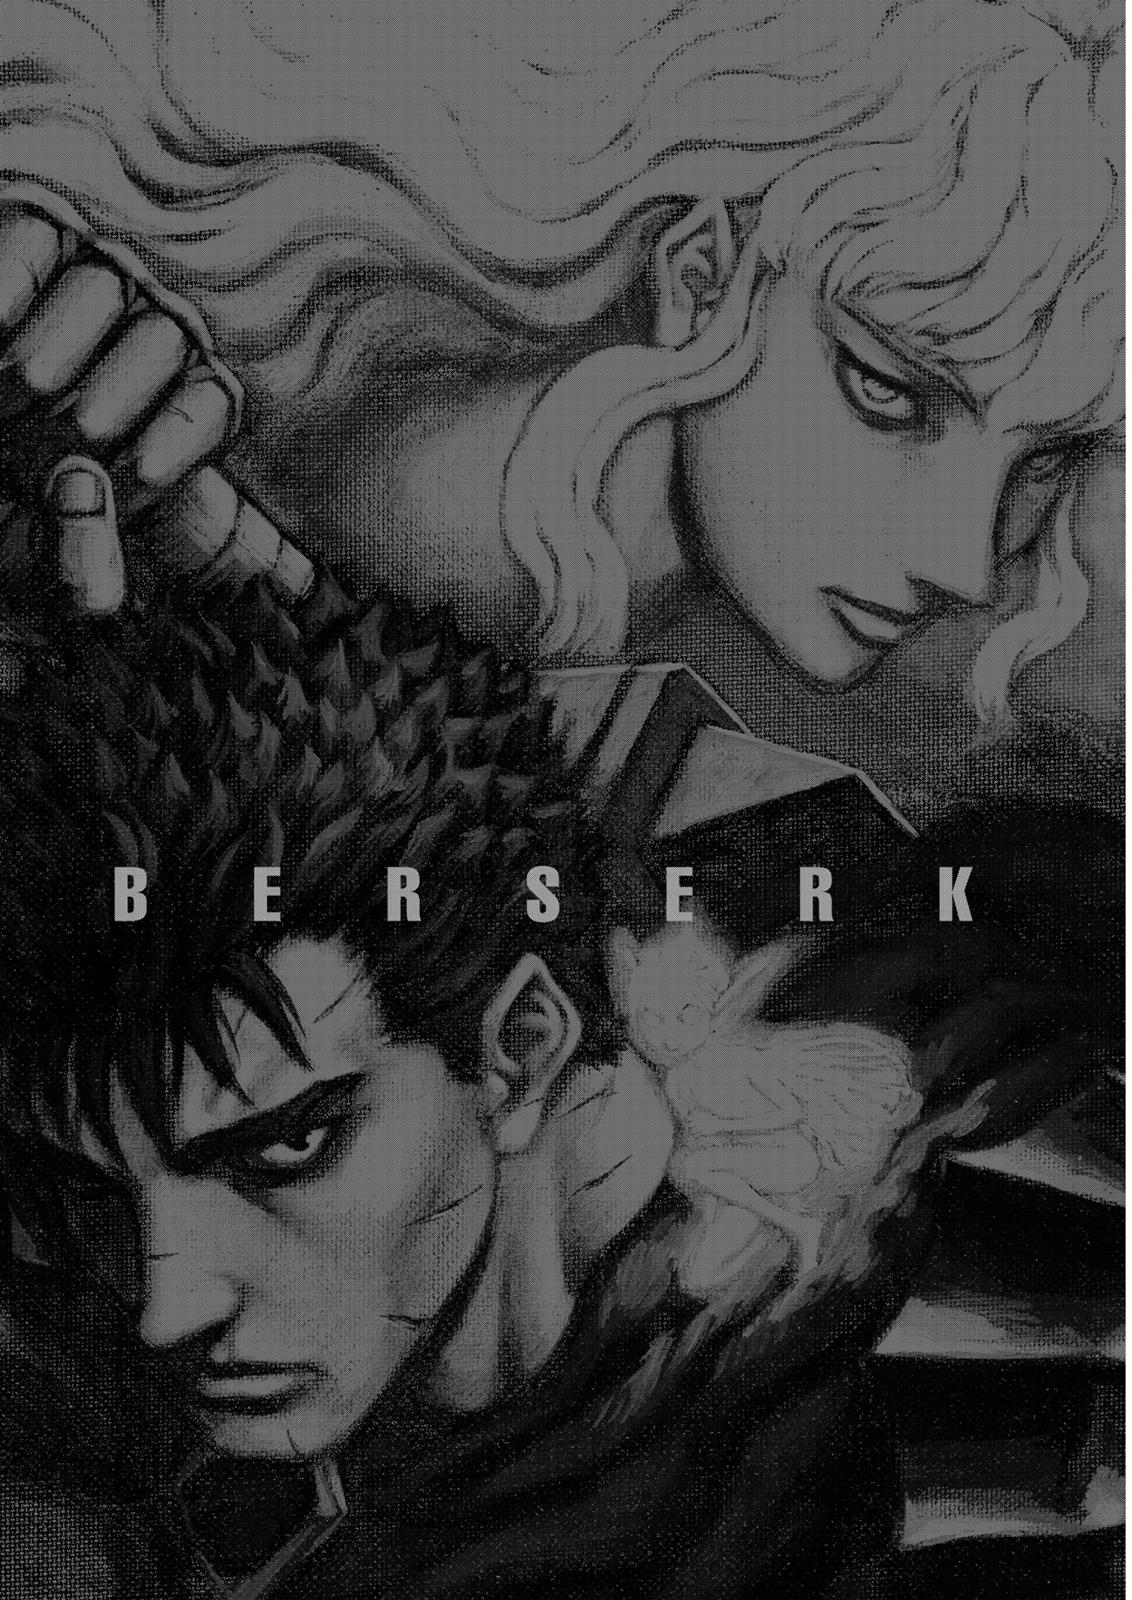 Berserk Manga Chapter 323 image 19